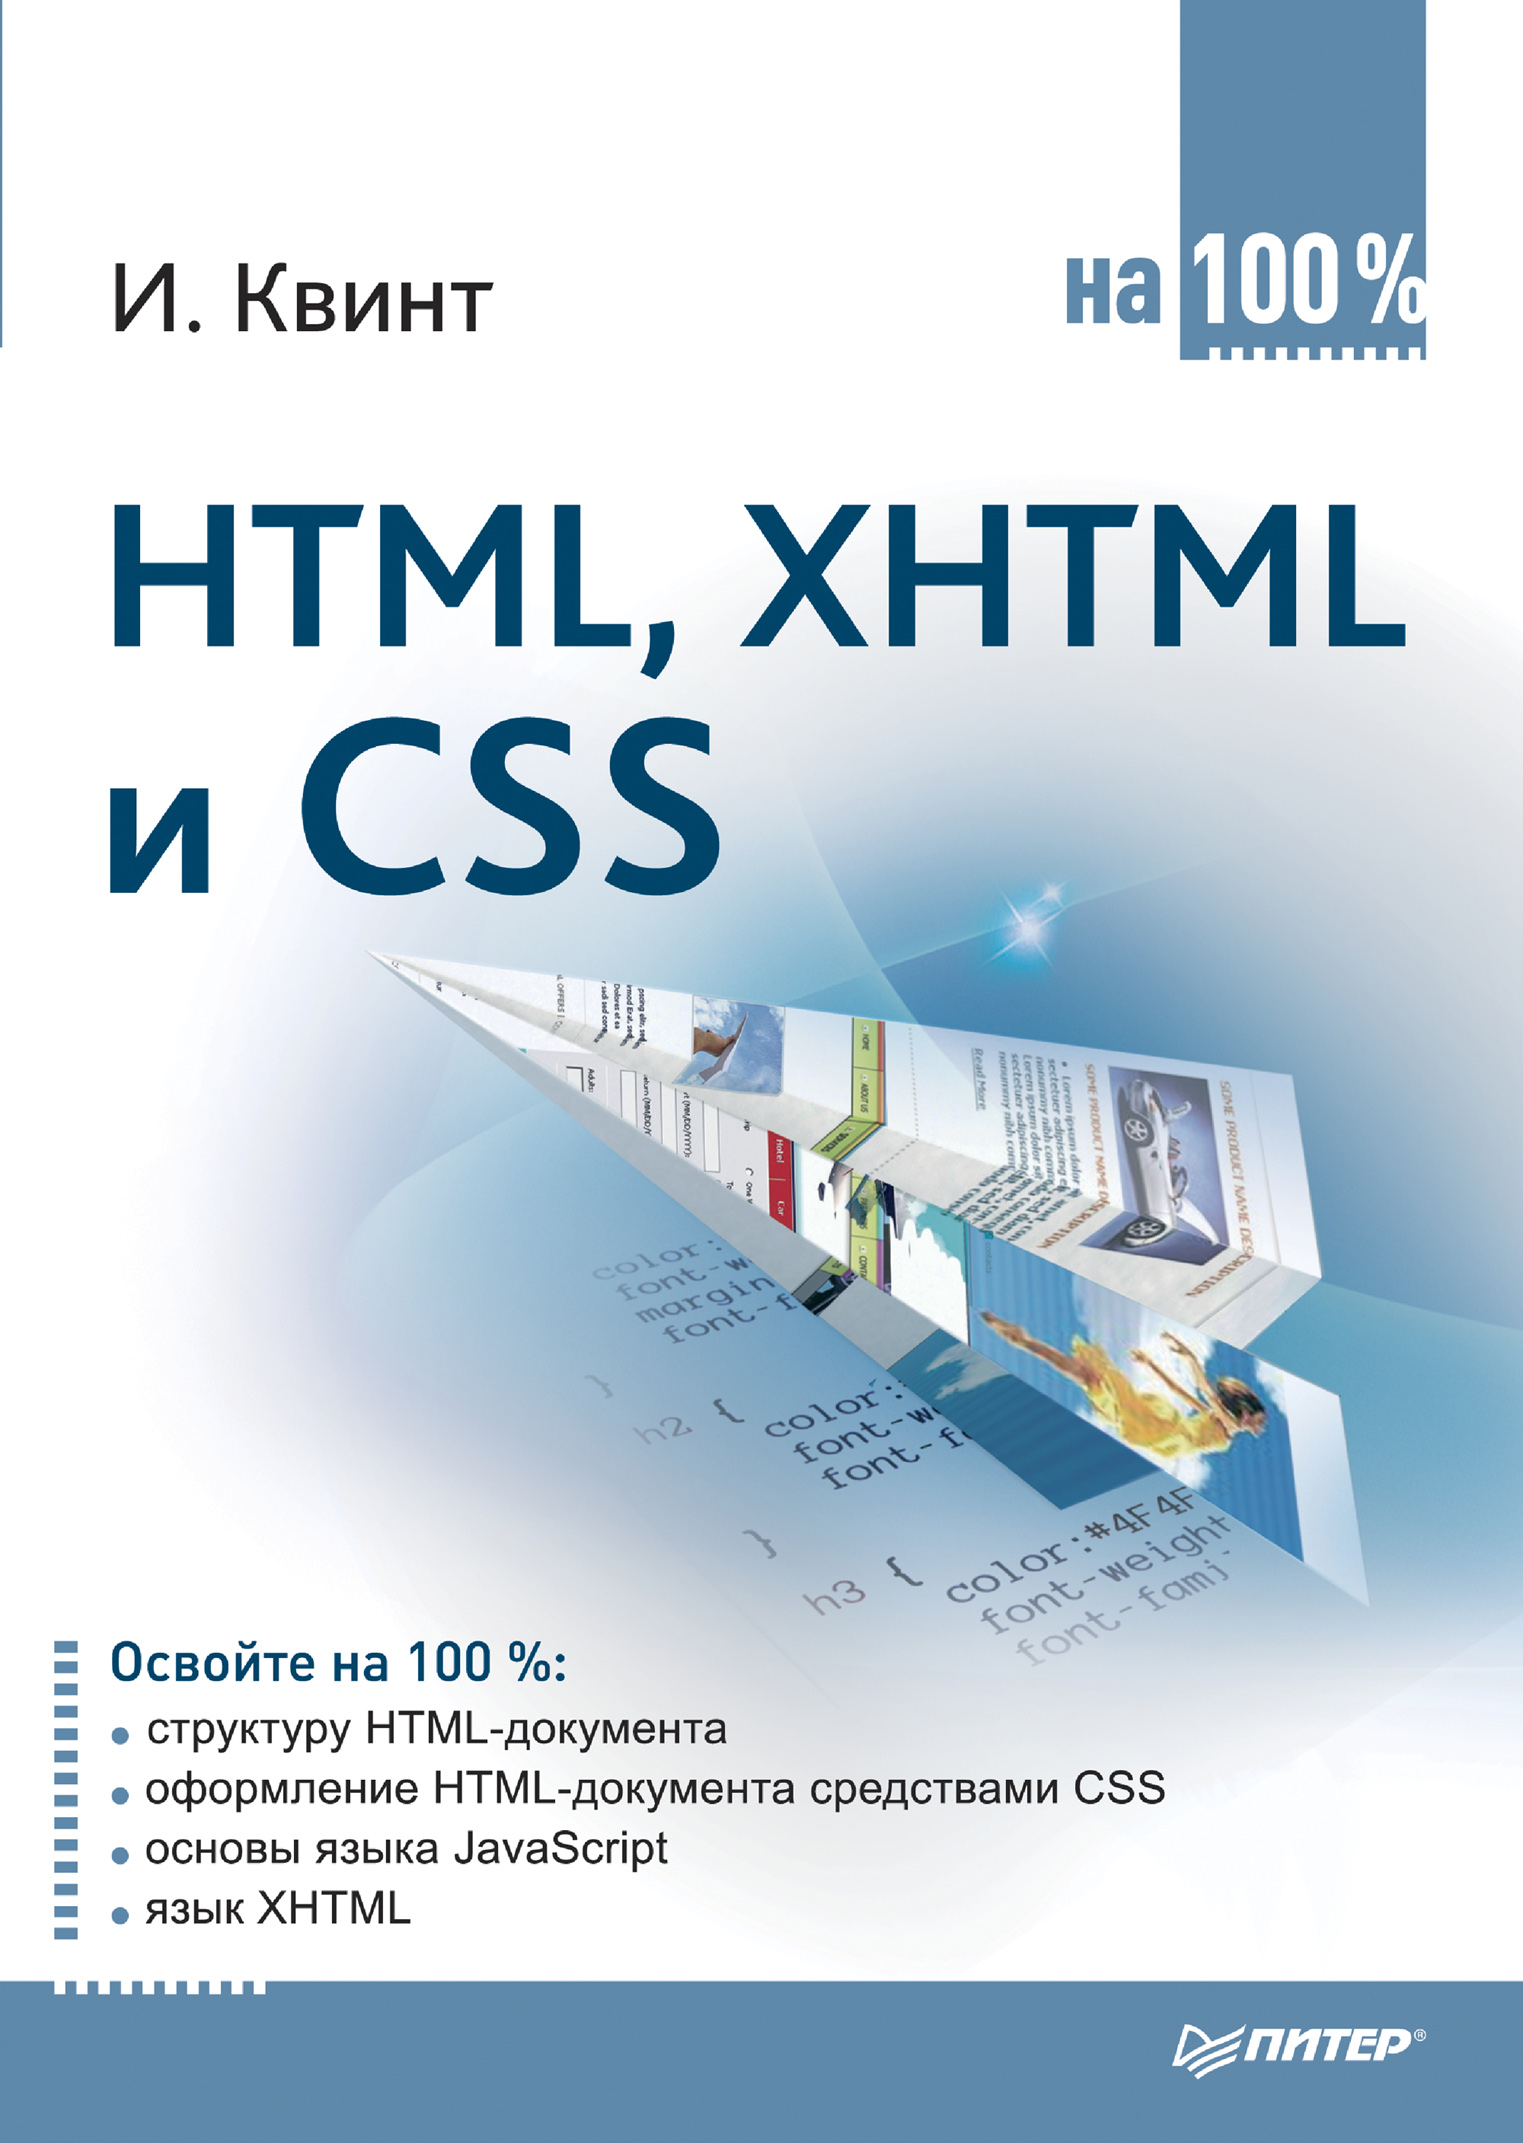 Книга  HTML, XHTML и CSS на 100% созданная Игорь Квинт может относится к жанру интернет, программирование. Стоимость электронной книги HTML, XHTML и CSS на 100% с идентификатором 421922 составляет 99.00 руб.